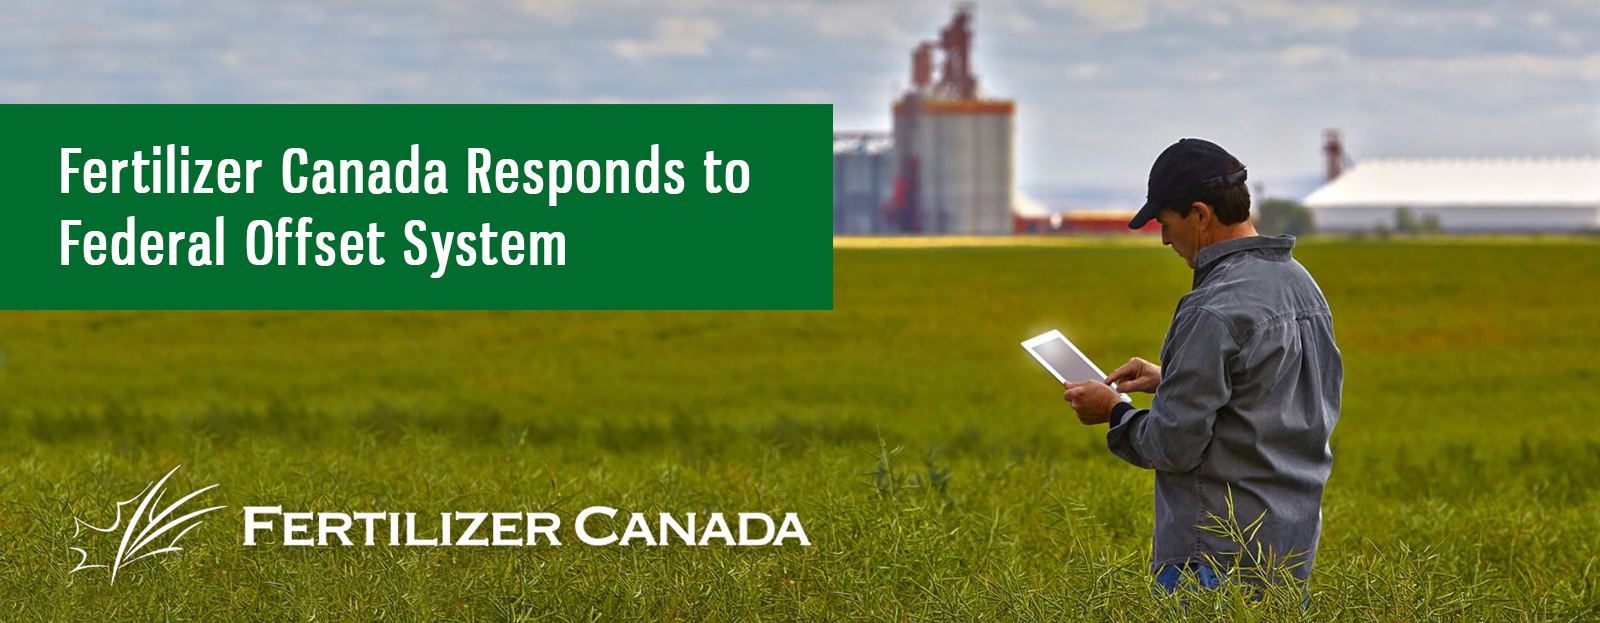 Fertilizer Canada Responds to Federal Offset System